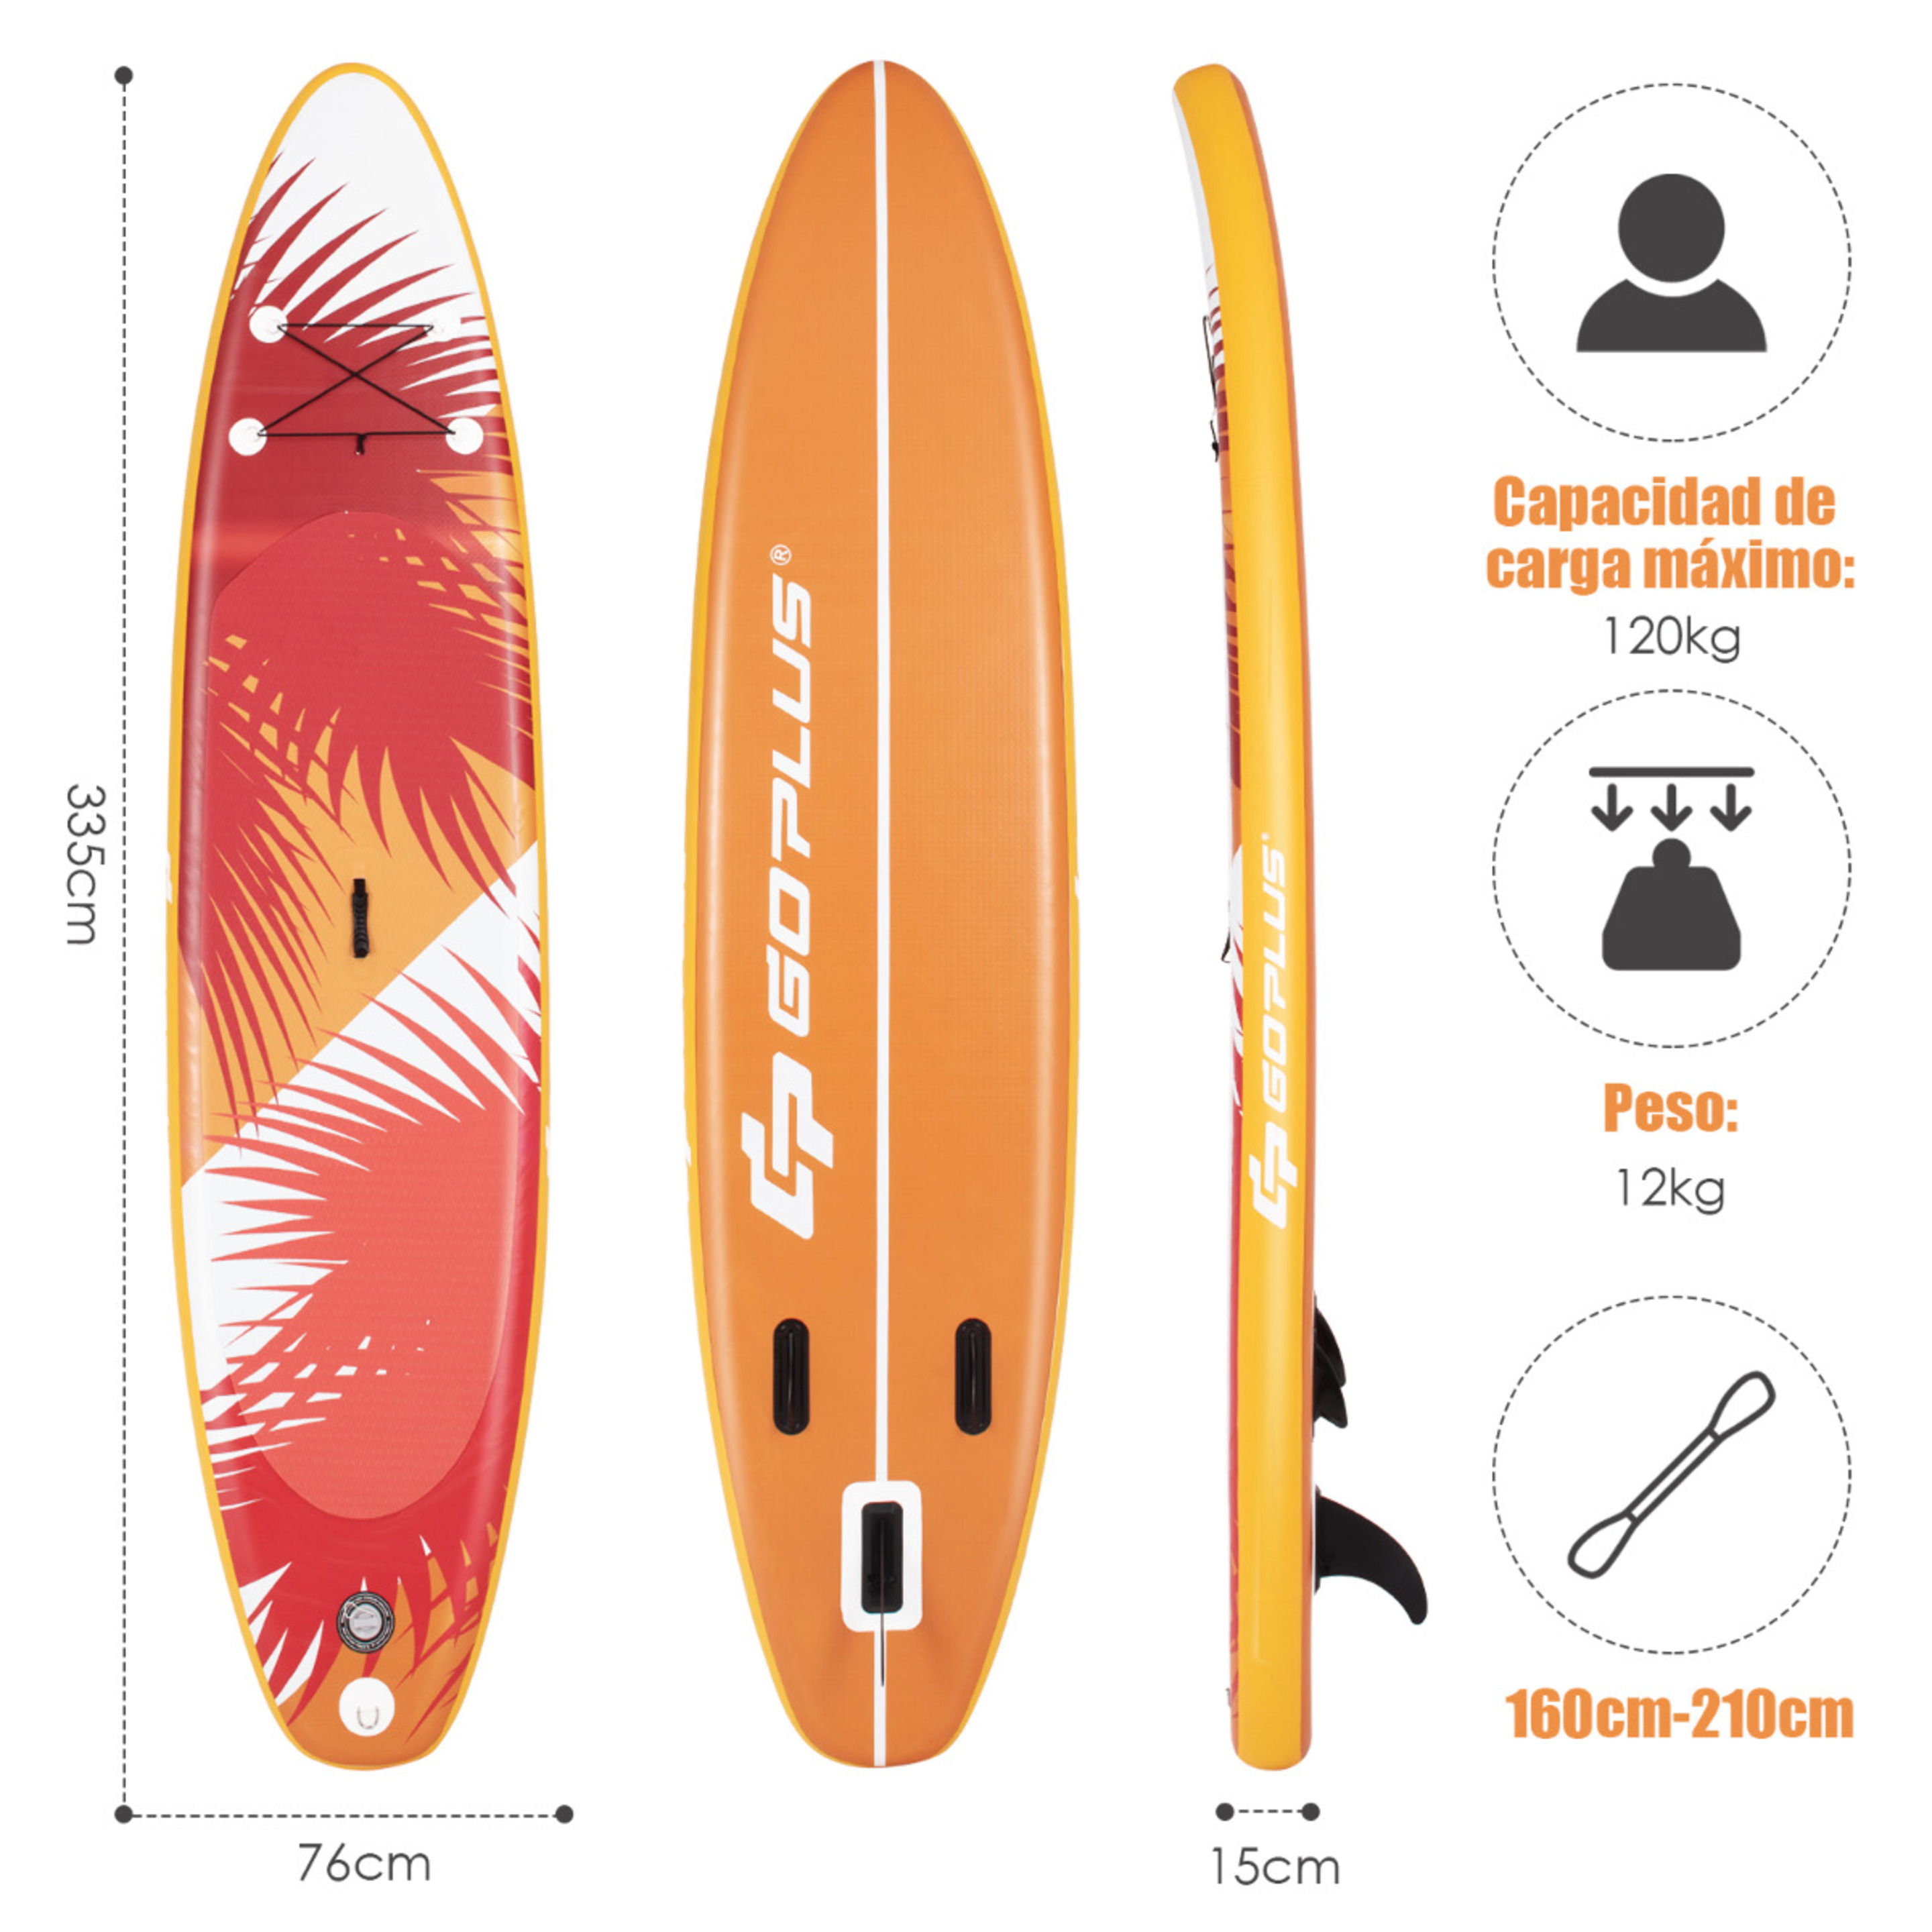 Costway Tabla De Paddle Inflable Para Jóvenes Y Adultos - Naranja/Rojo - Tabla De Surf  MKP